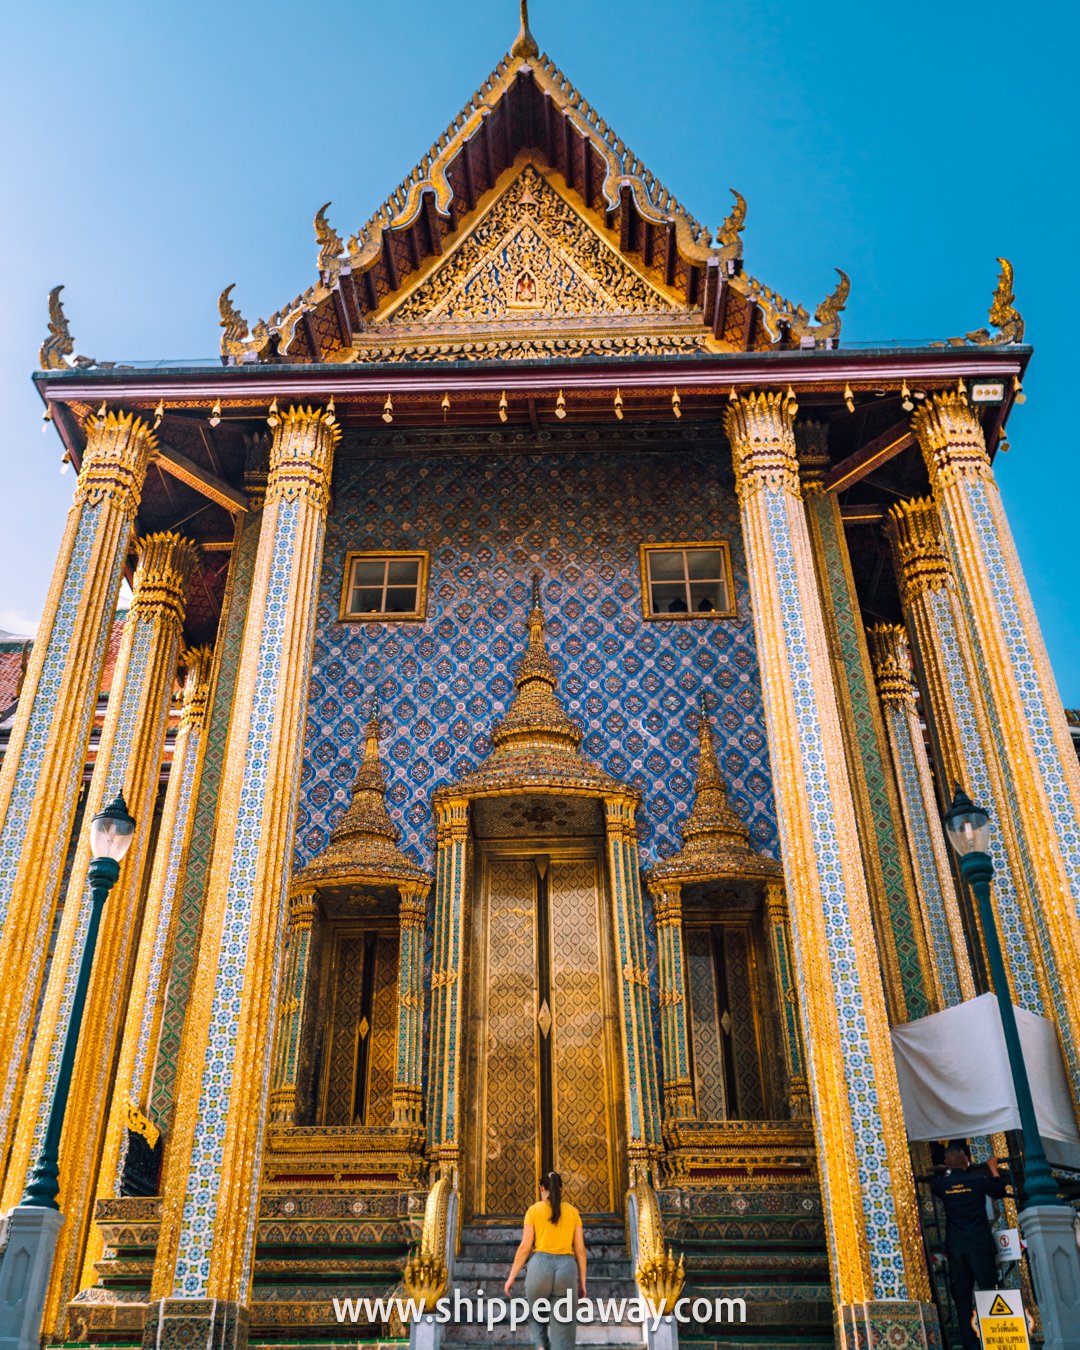 Grand Palace Bangkok Thailand, Travel Guide to Grand Palace in Bangkok, Things to see in the Grand Palace in Bangkok, best tours to grand palace in bangkok, Phra Mondop